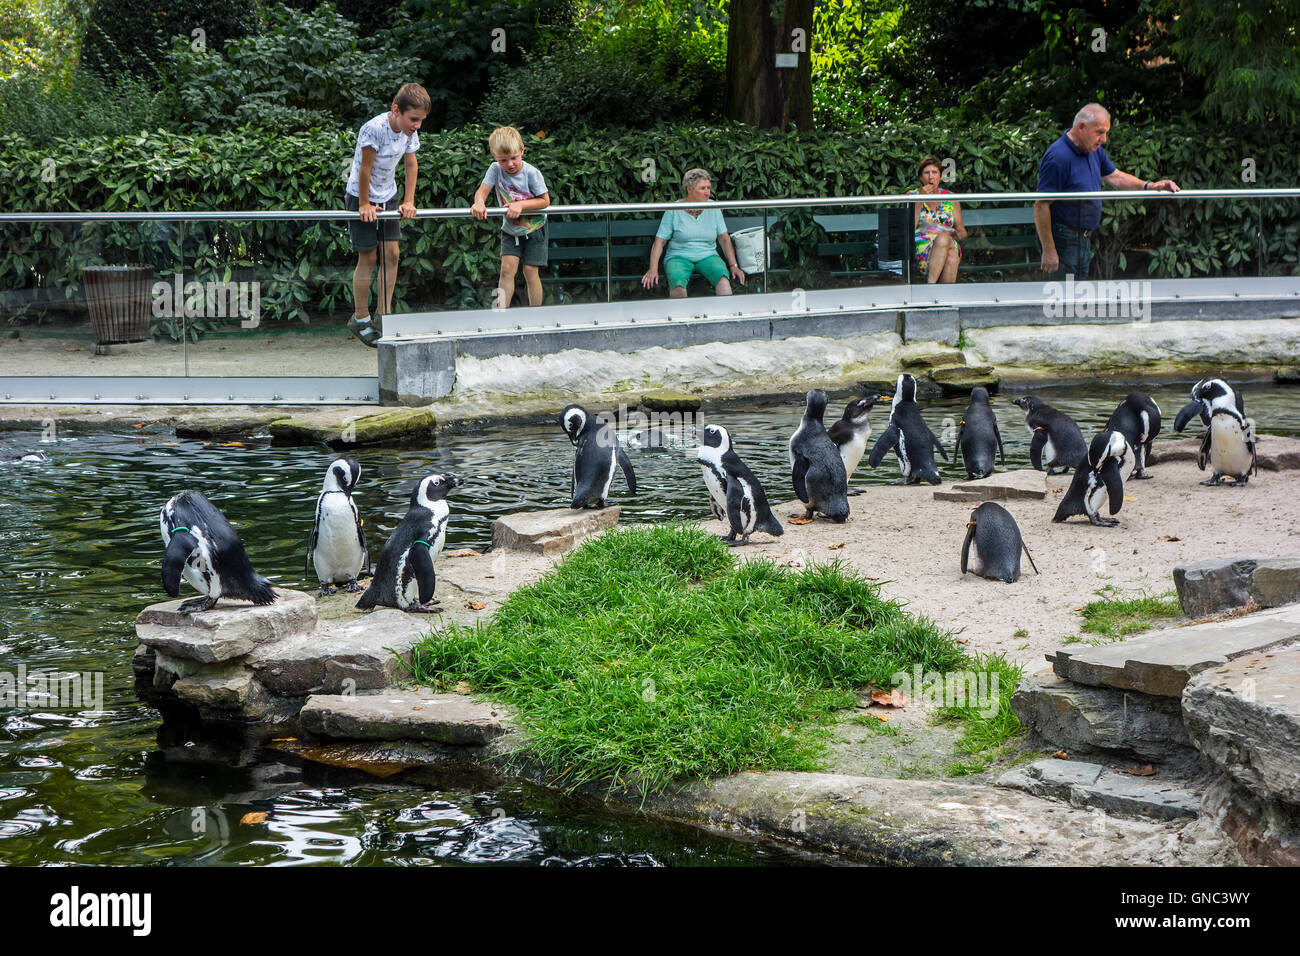 Les visiteurs qui cherchent à pingouins africains / putois (Spheniscus demersus) dans le Zoo d'Anvers, Belgique Banque D'Images